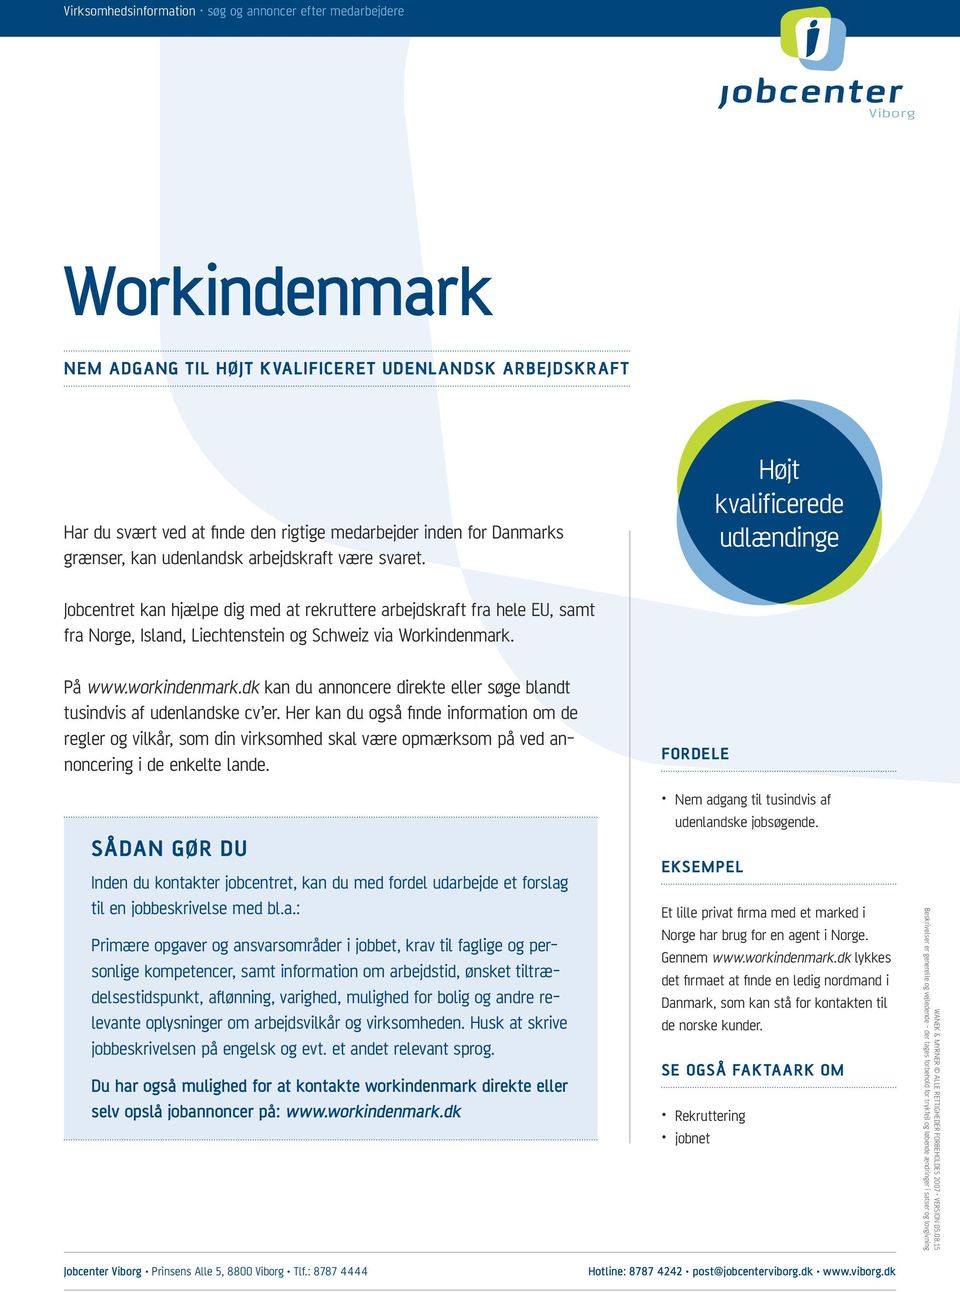 Højt kvalificerede udlændinge Jobcentret kan hjælpe dig med at rekruttere arbejdskraft fra hele EU, samt fra Norge, Island, Liechtenstein og Schweiz via Workindenmark. På www.workindenmark.